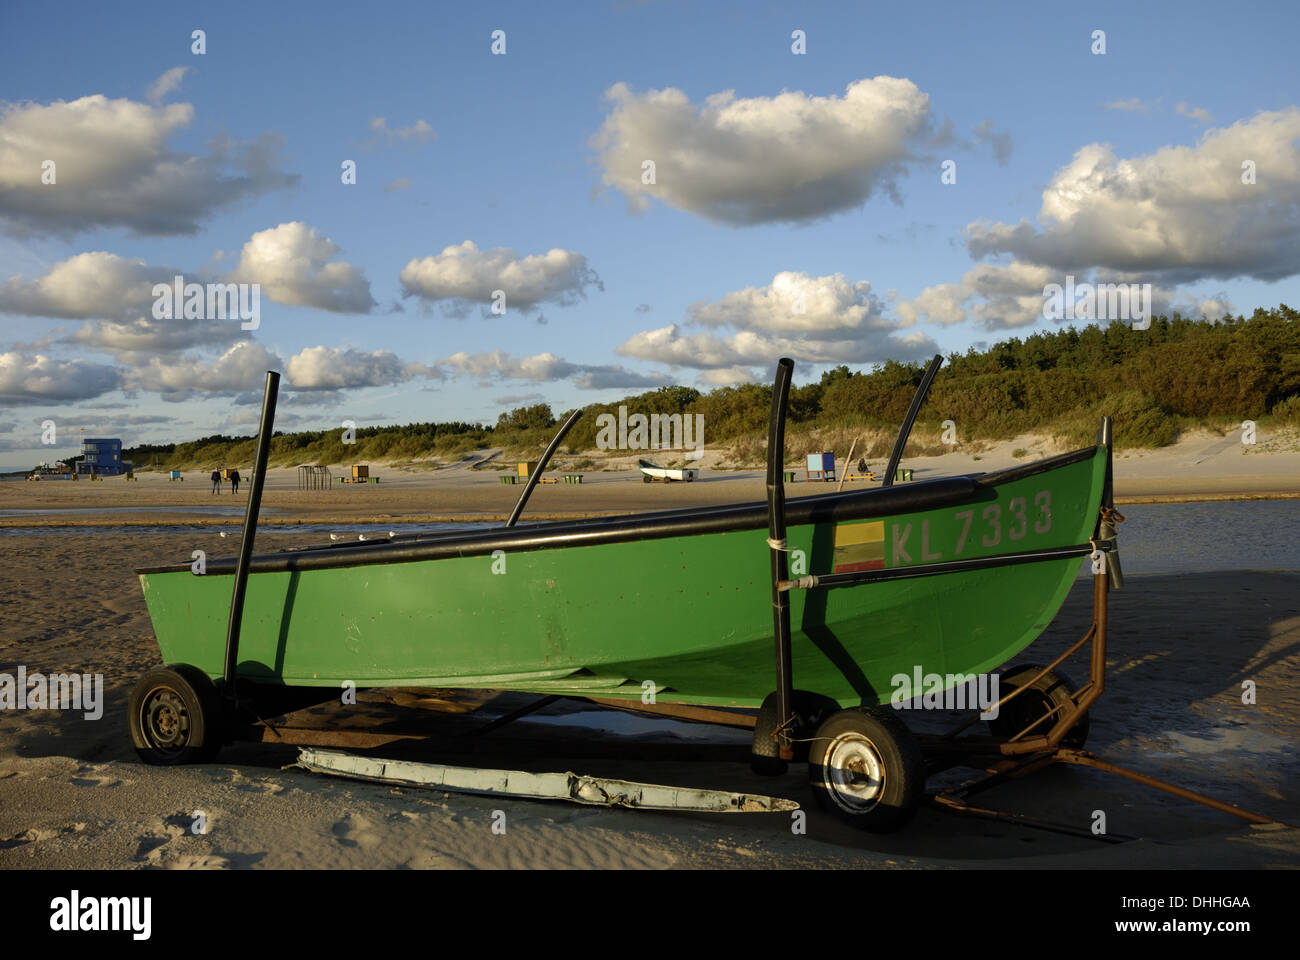 Carrello Con Ruote Grandi Per Il Lancio Di Barche Sulla Spiaggia Fotografia  Stock - Immagine di interno, nube: 193219118